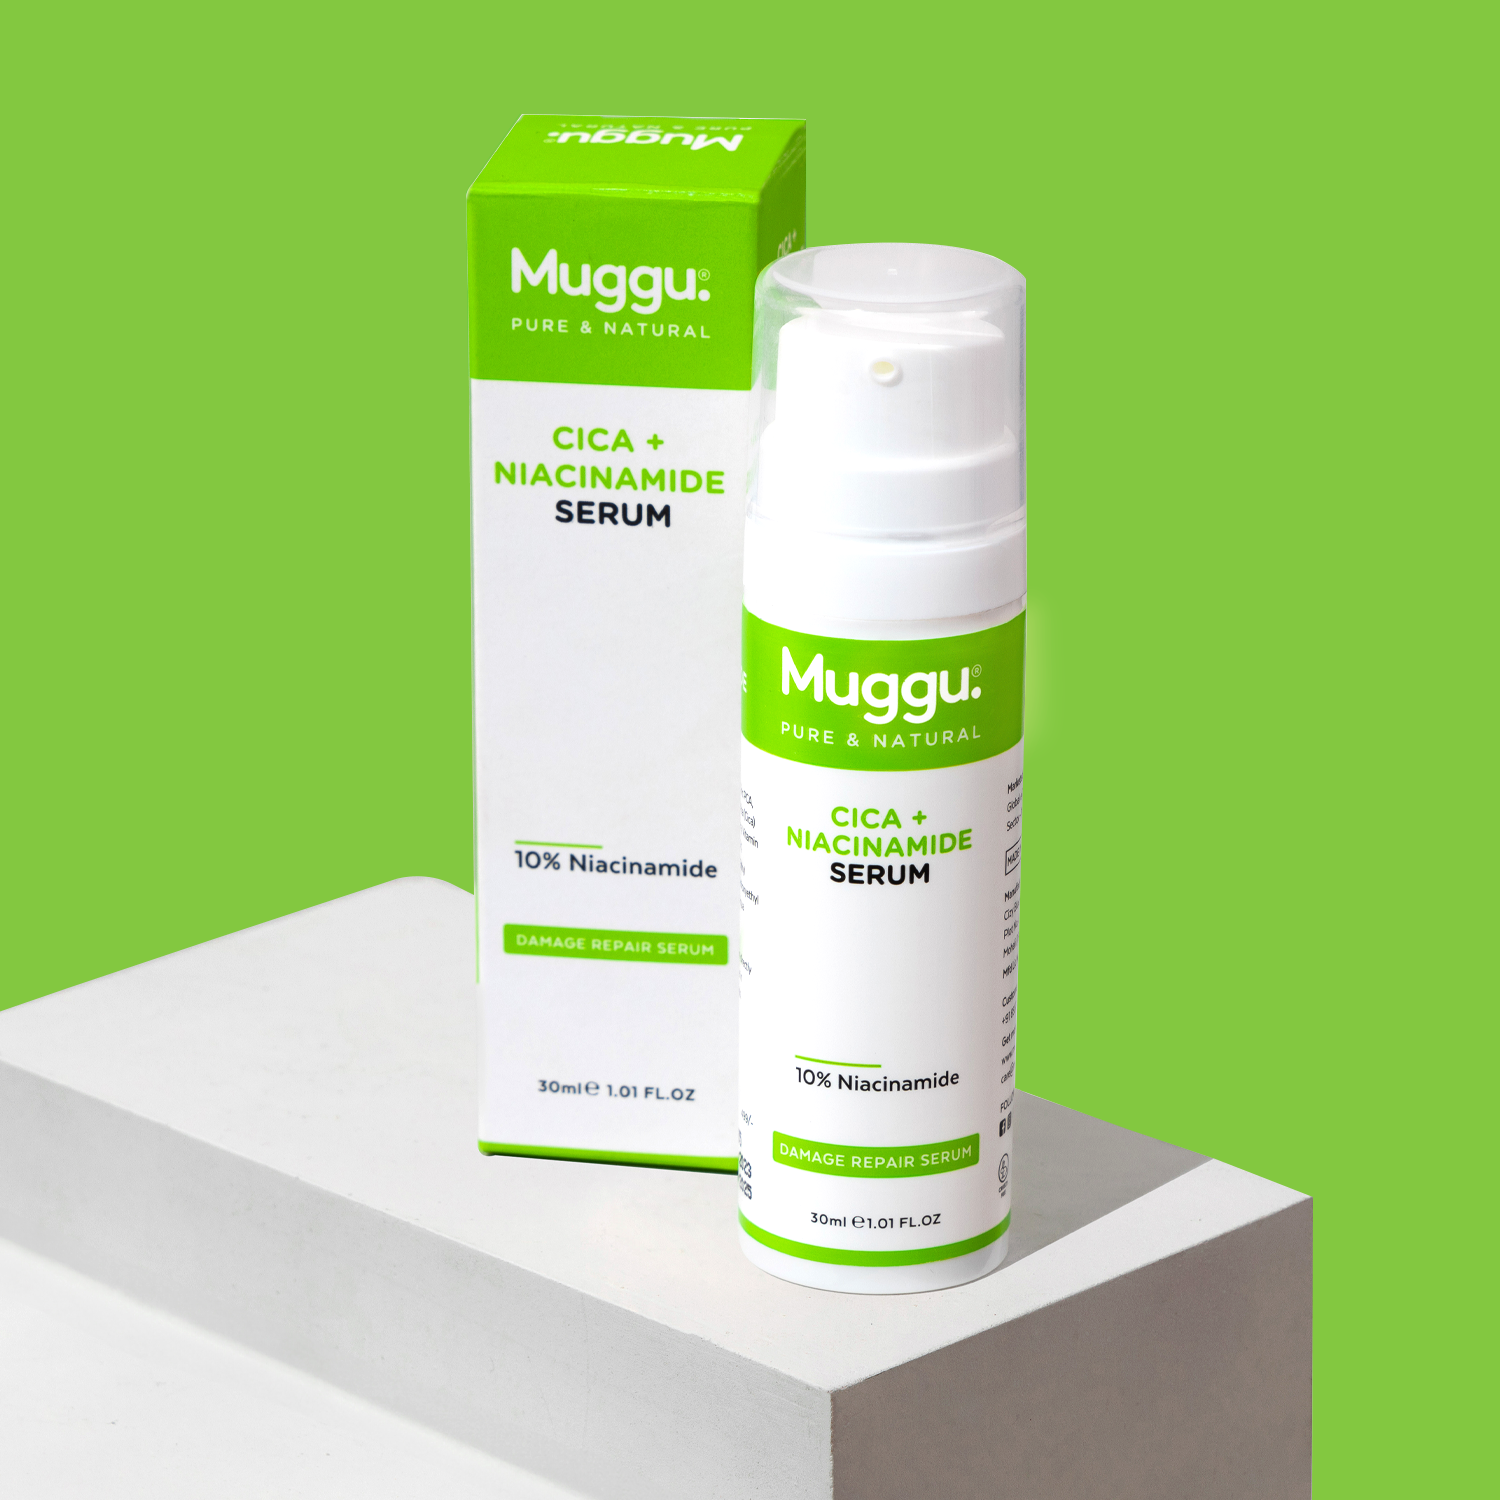 Cica + Niacinamide Serum for Dry Skin & Acne – Muggu SkinCare